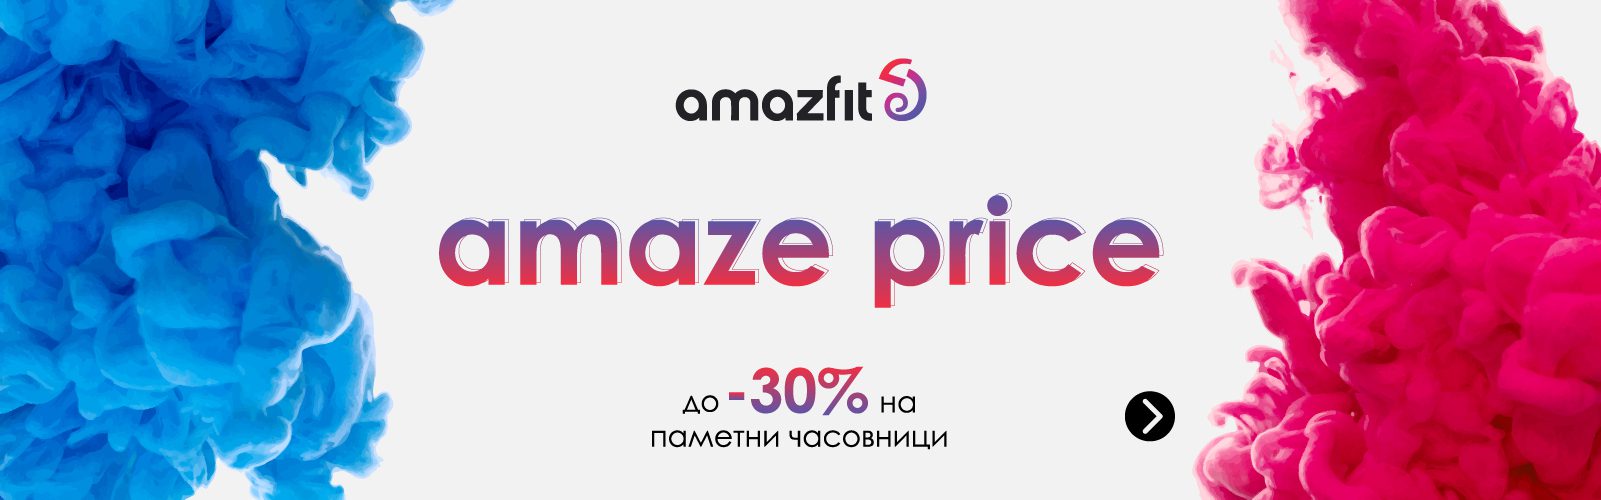 Amaze-price-slider